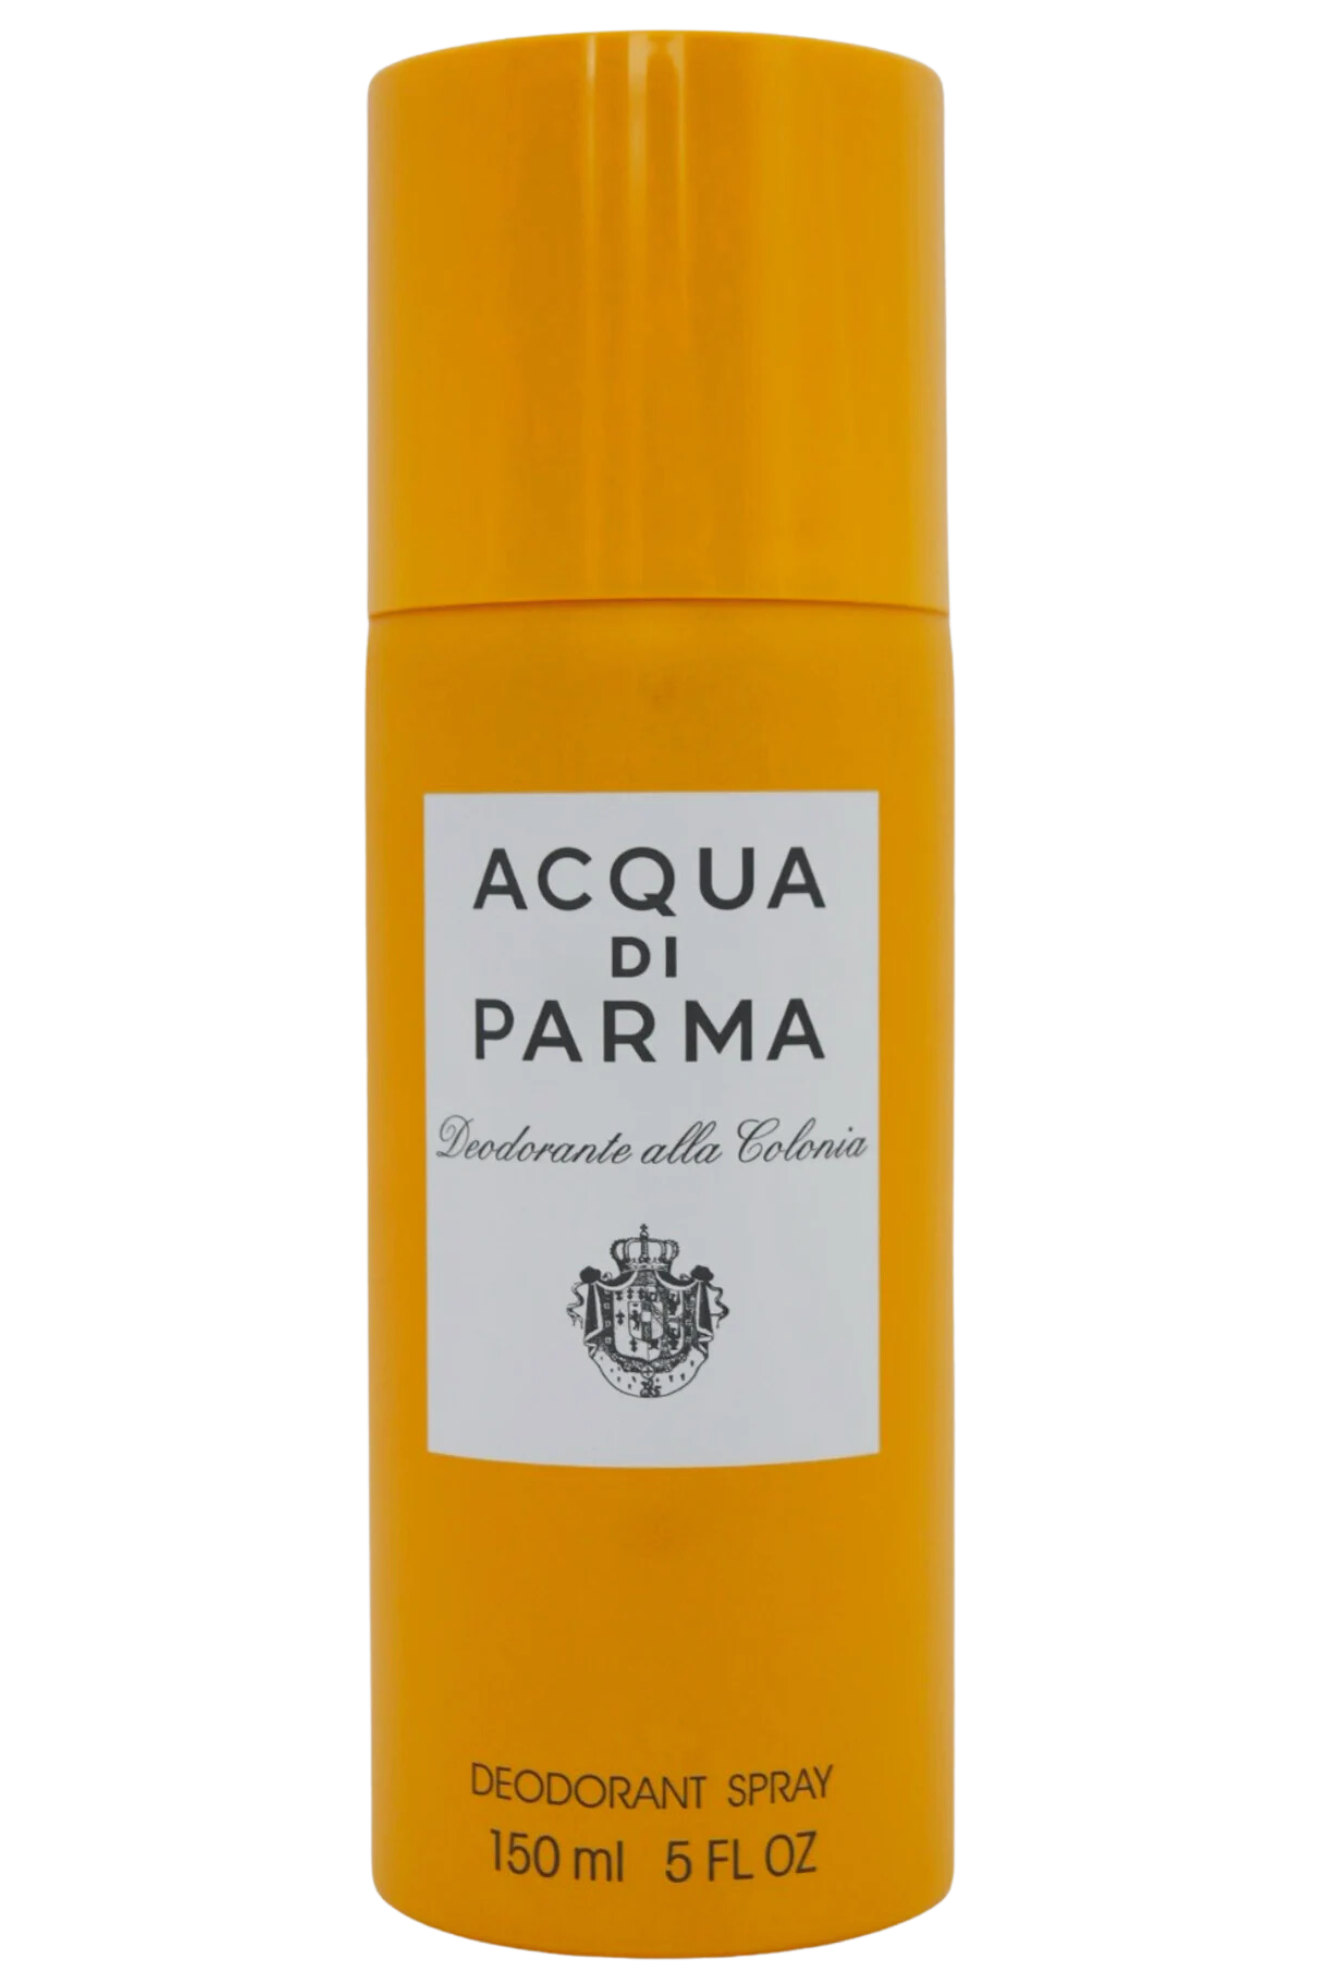 Acqua di Parma Colonia Deodorant Spray 150 ml